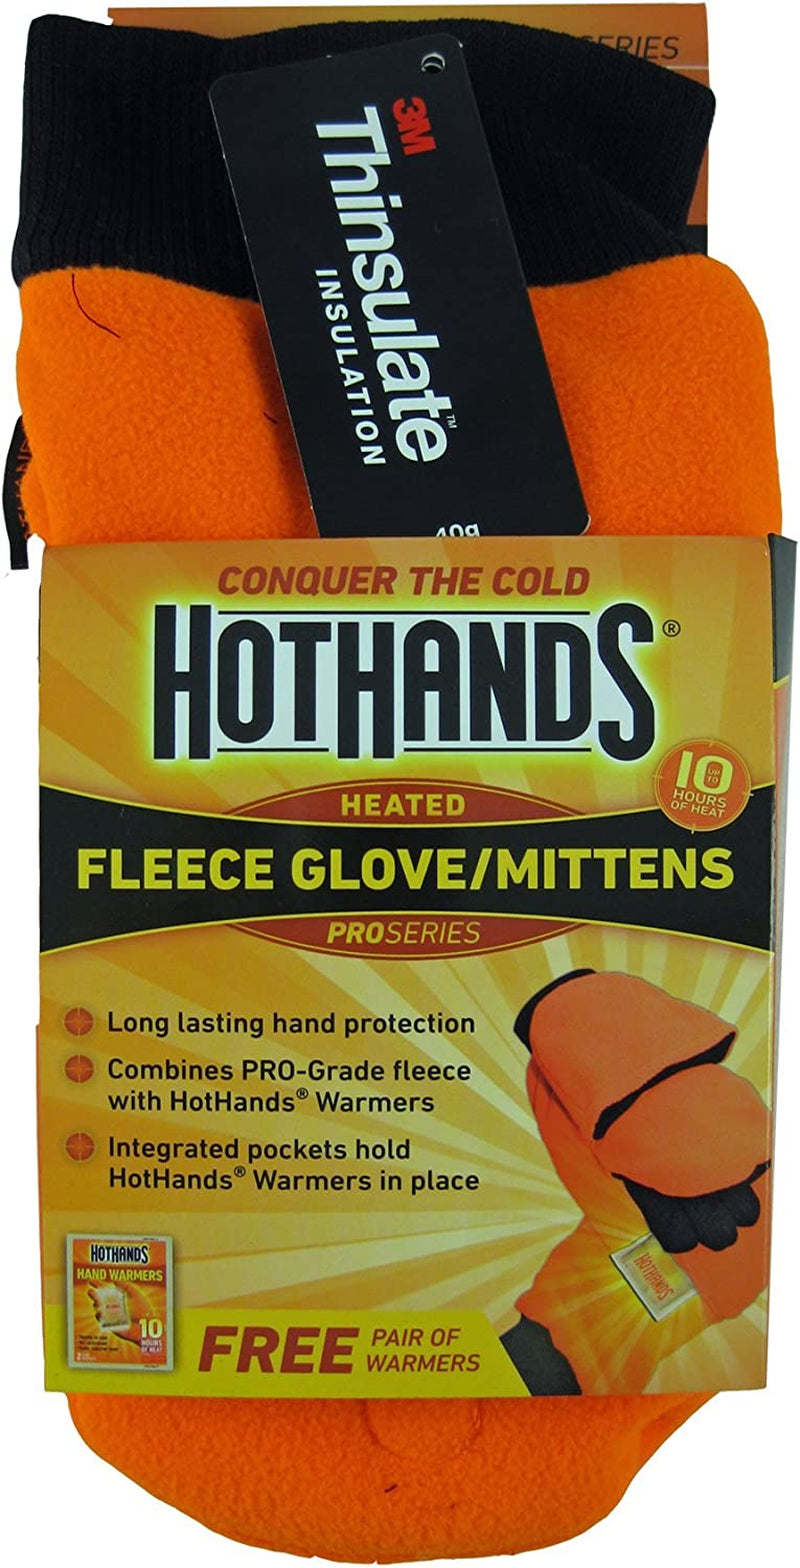 Hothands Heated Fleece Glove / Mittens